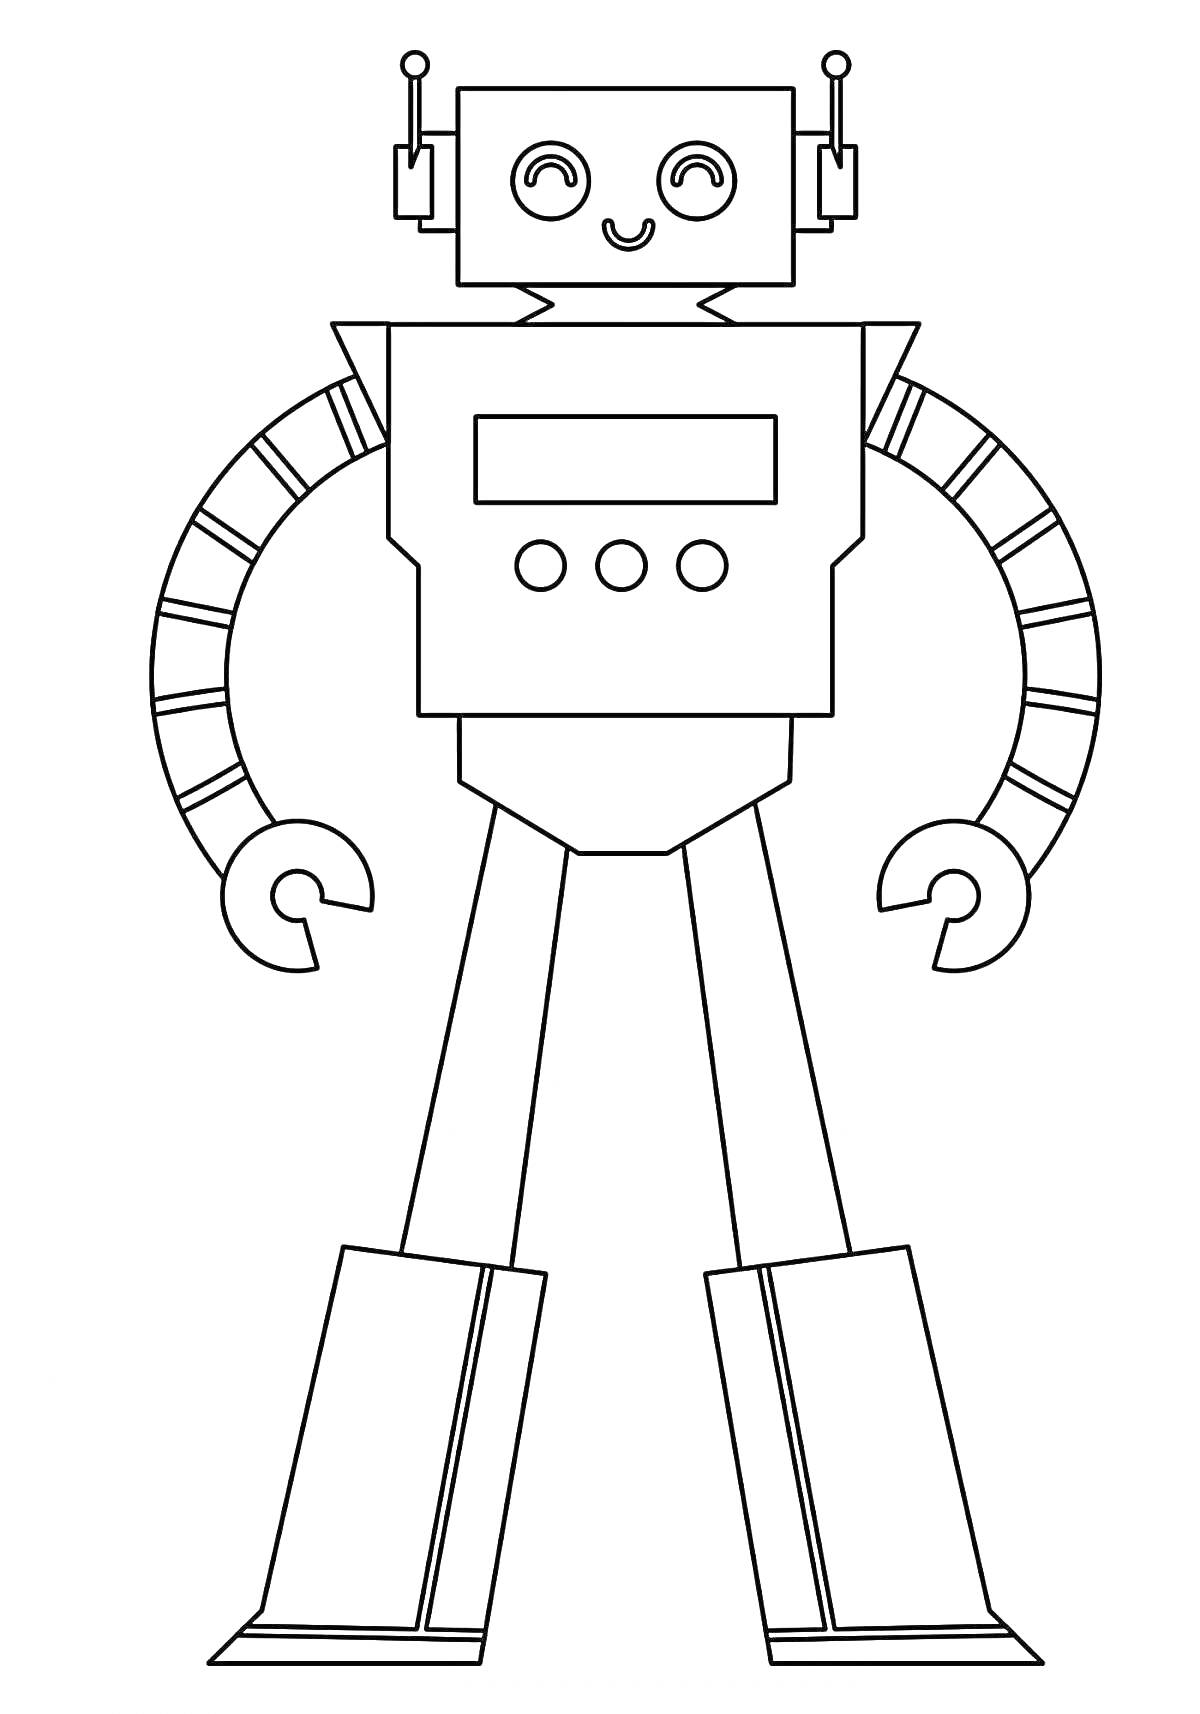 Раскраска Робот с антеннами, кнопками, механическими руками и ногами